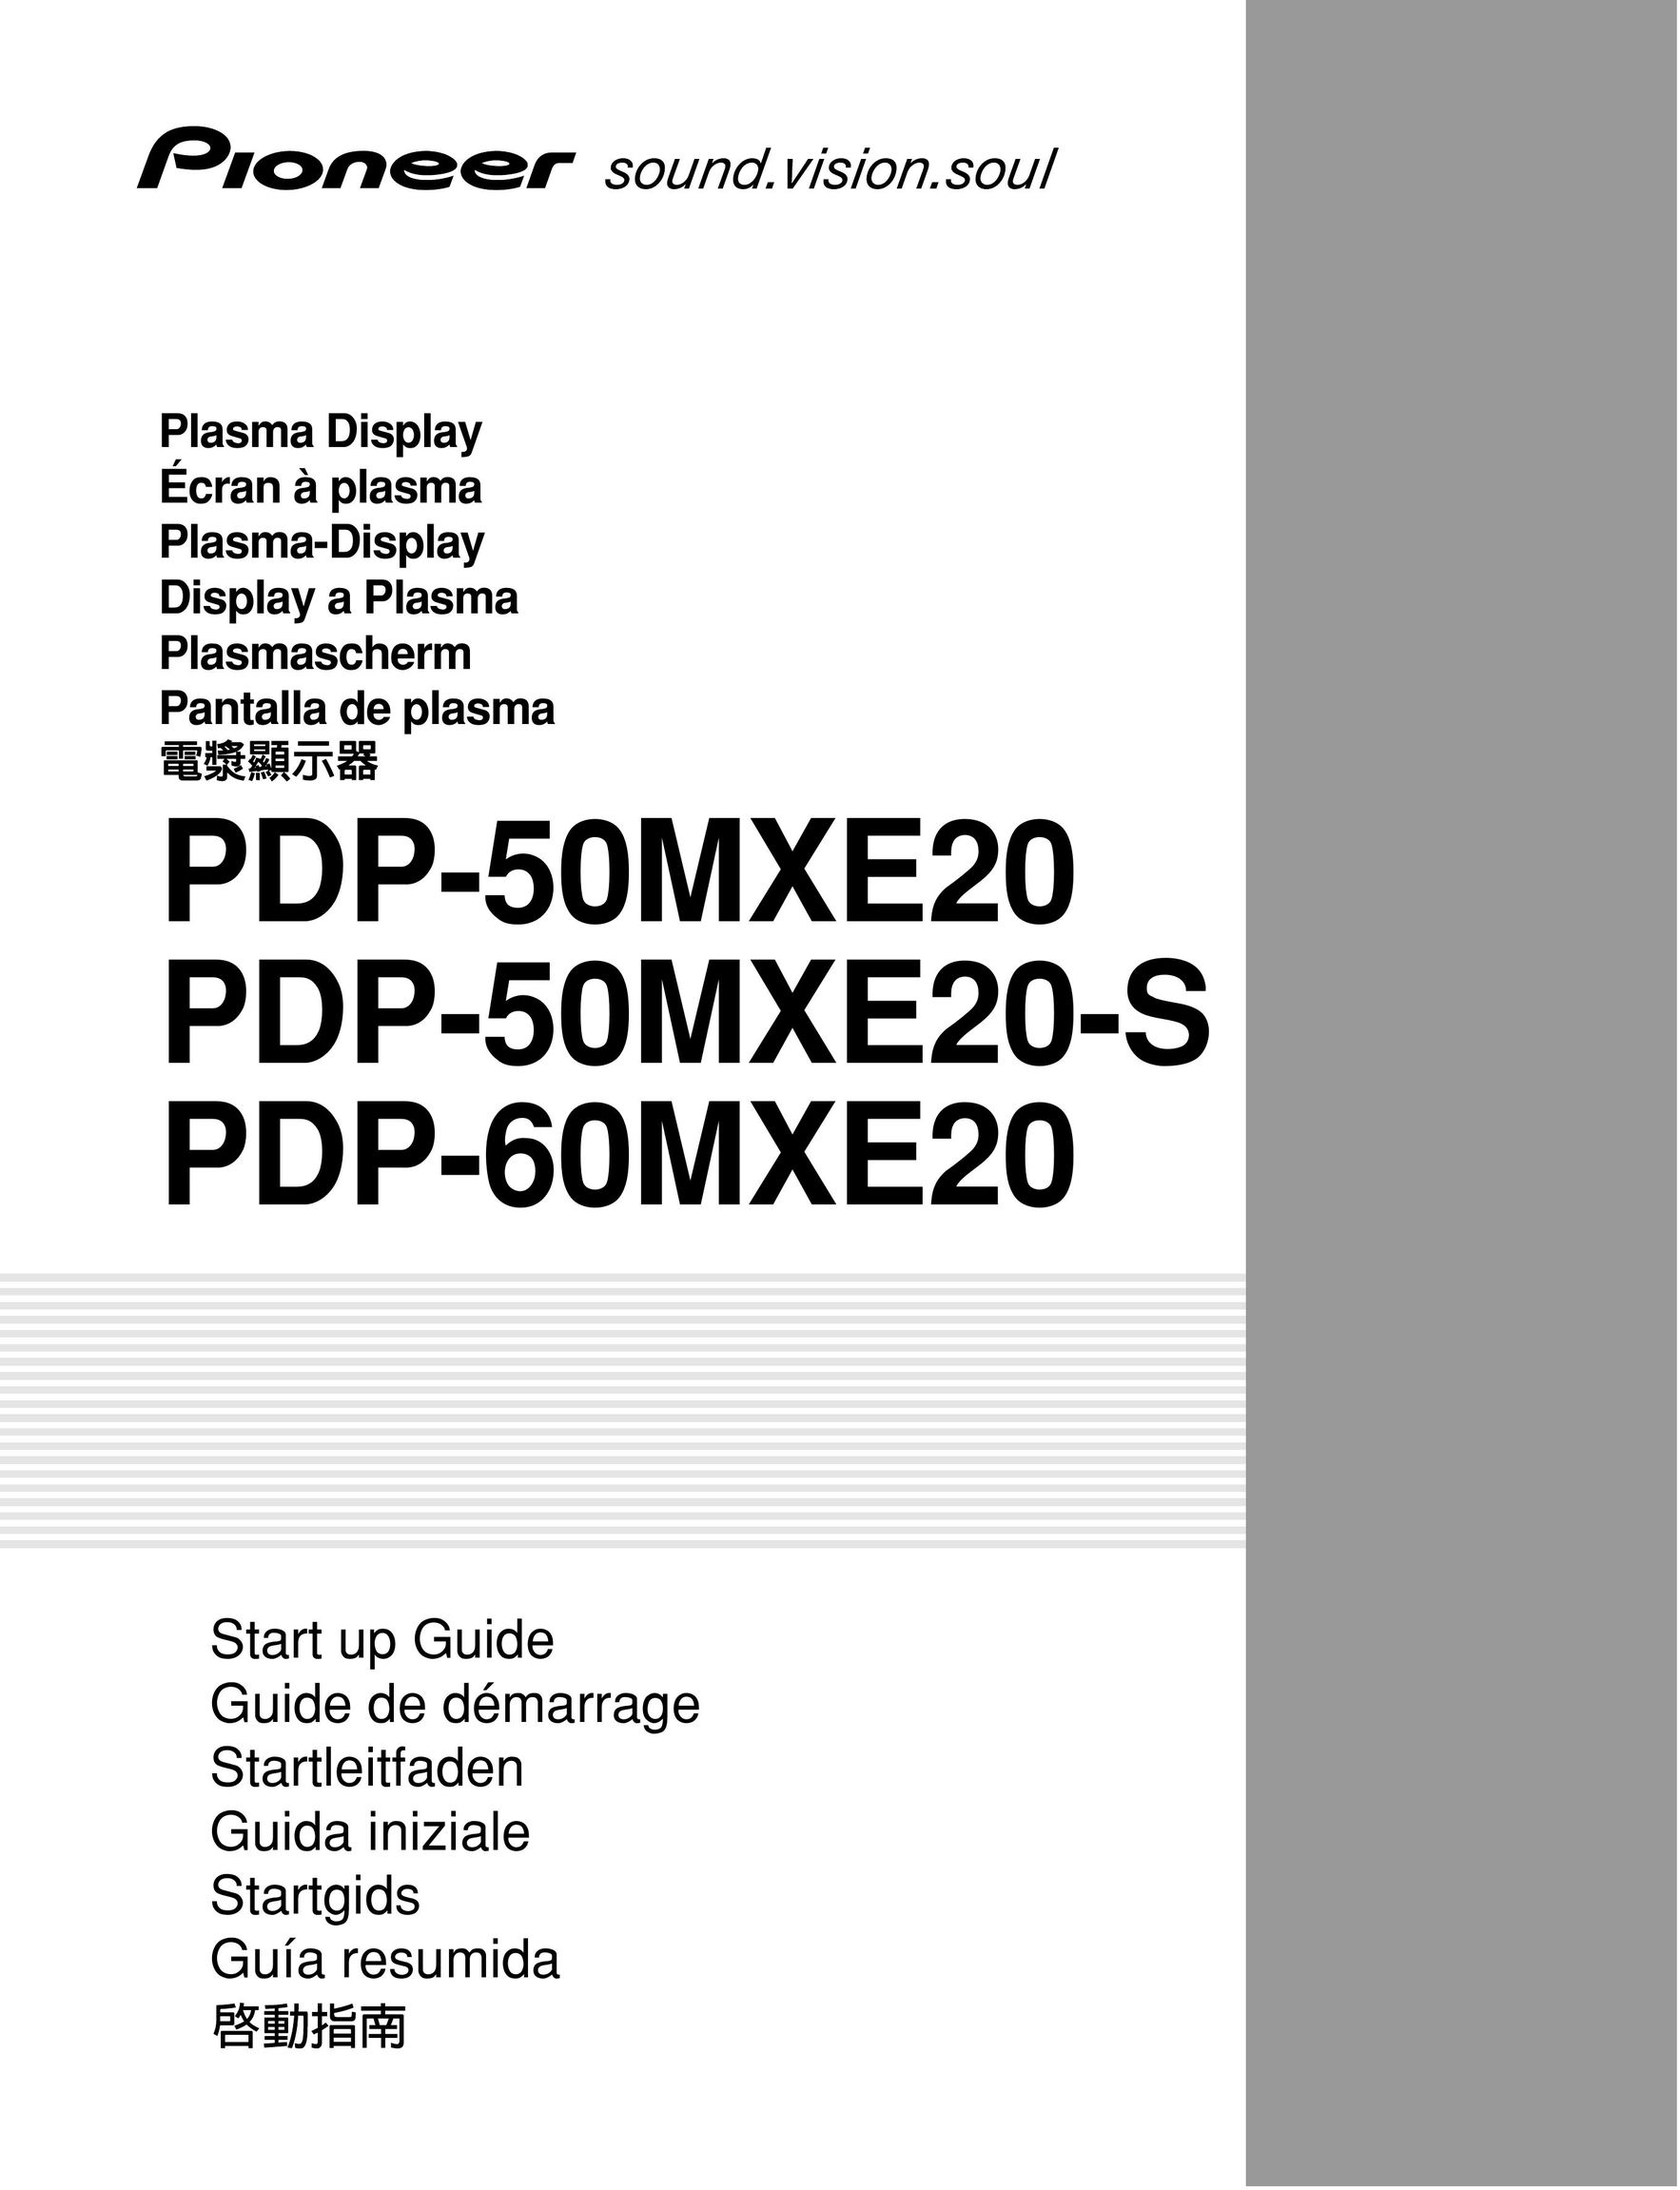 Pioneer PDP-60MXE20 Projector User Manual